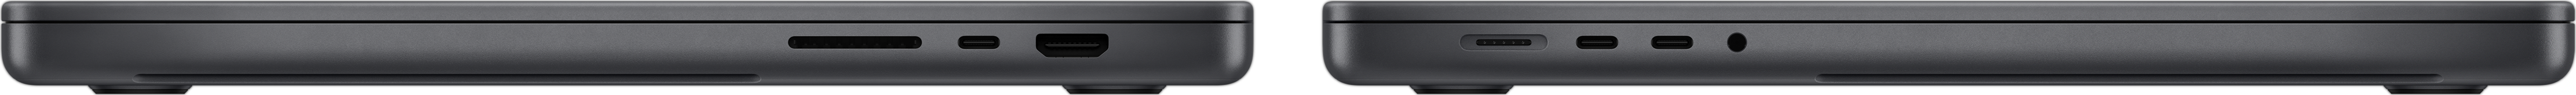 Vue latérale de MacBook Pro montrant la fente pour carte SDXC, les trois ports Thunderbolt 4, le port HDMI, le port d’alimentation MagSafe 3 et la prise pour écouteurs.